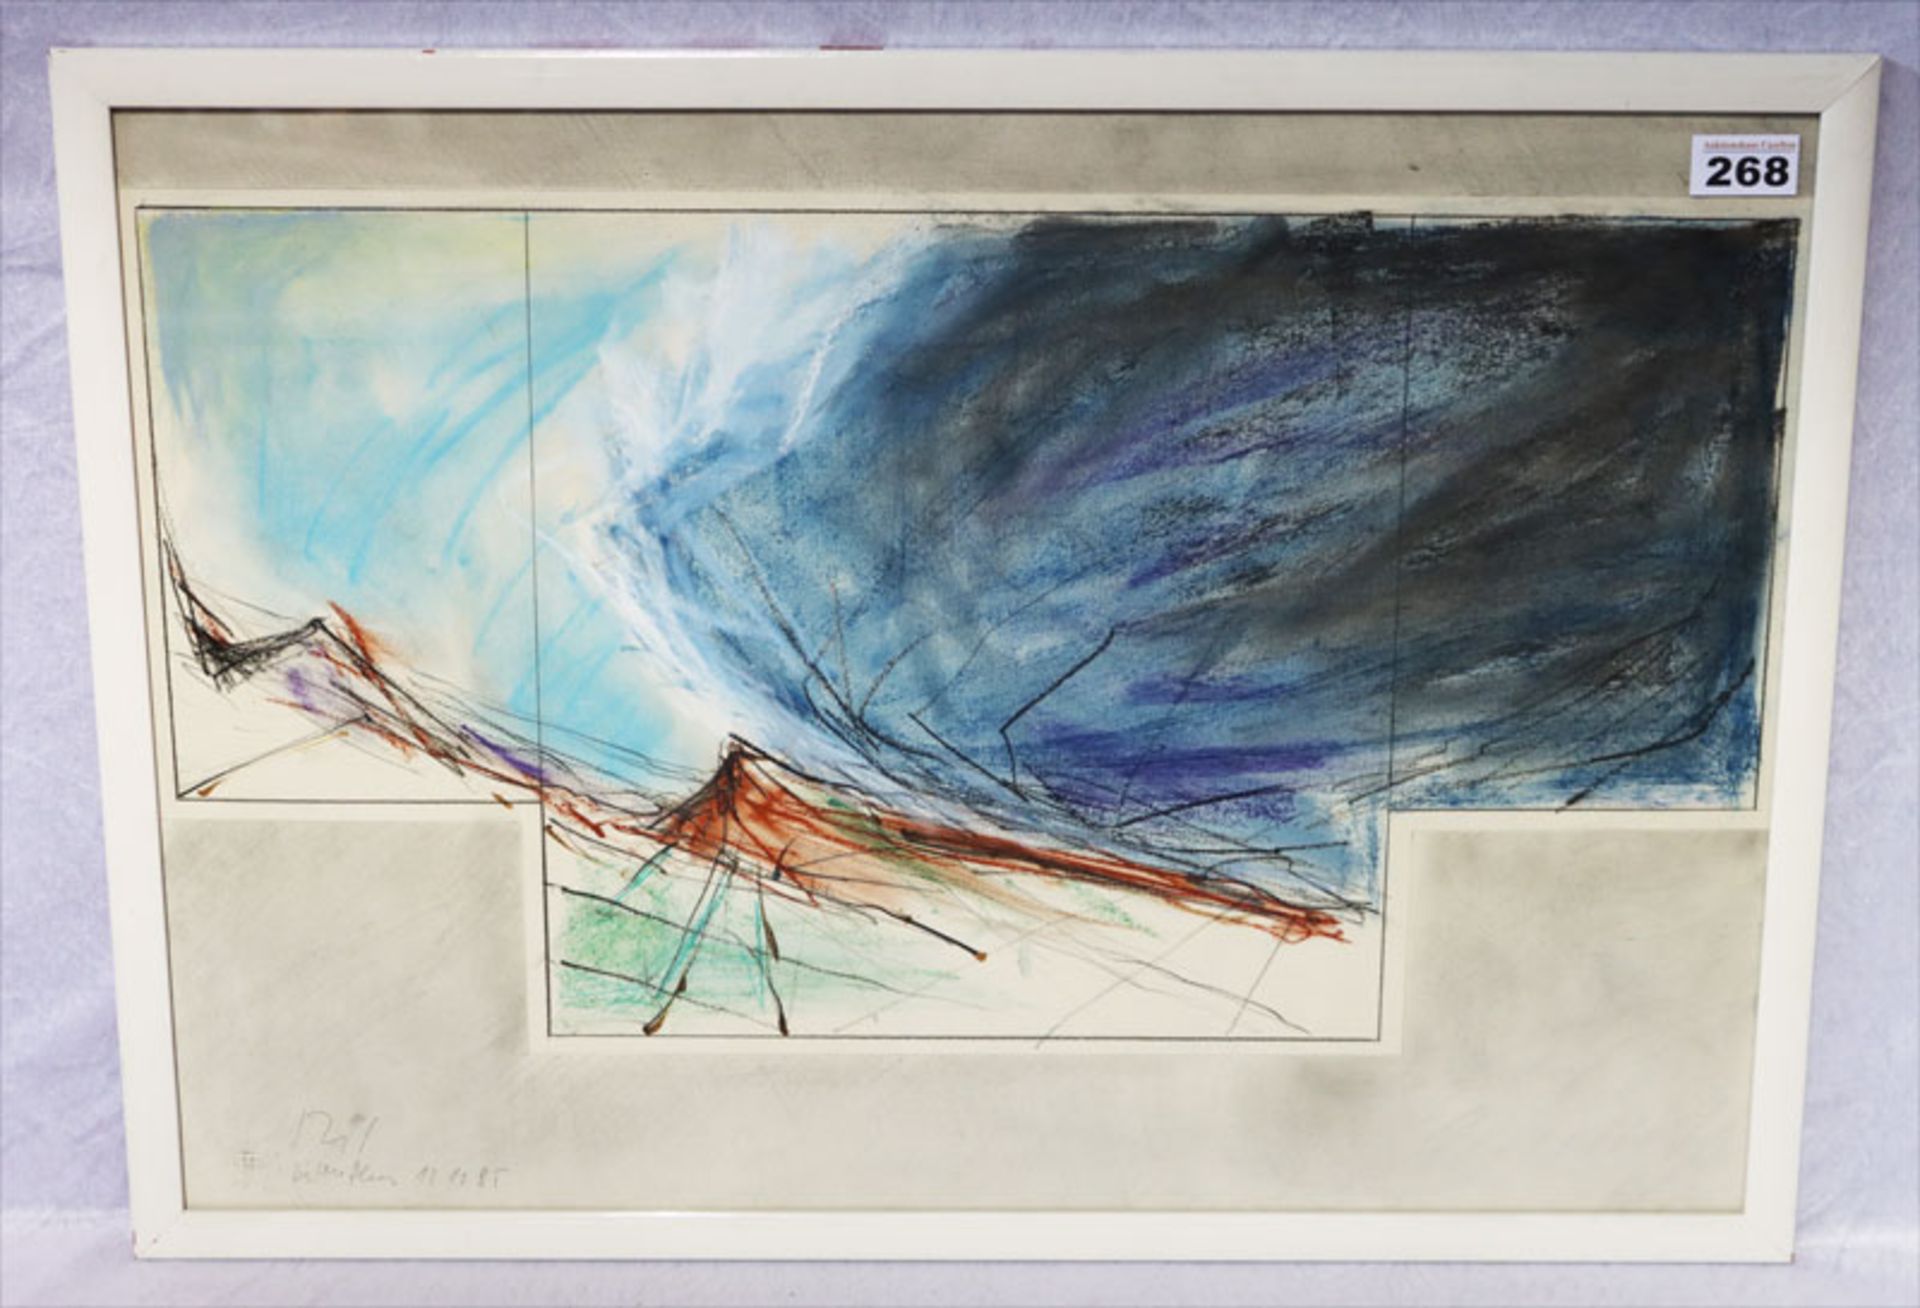 Pastell, Bleistift und Tusche auf Papier 'Landschaft' 1985, Alexander Rogl, Vita: Bildender Künstler